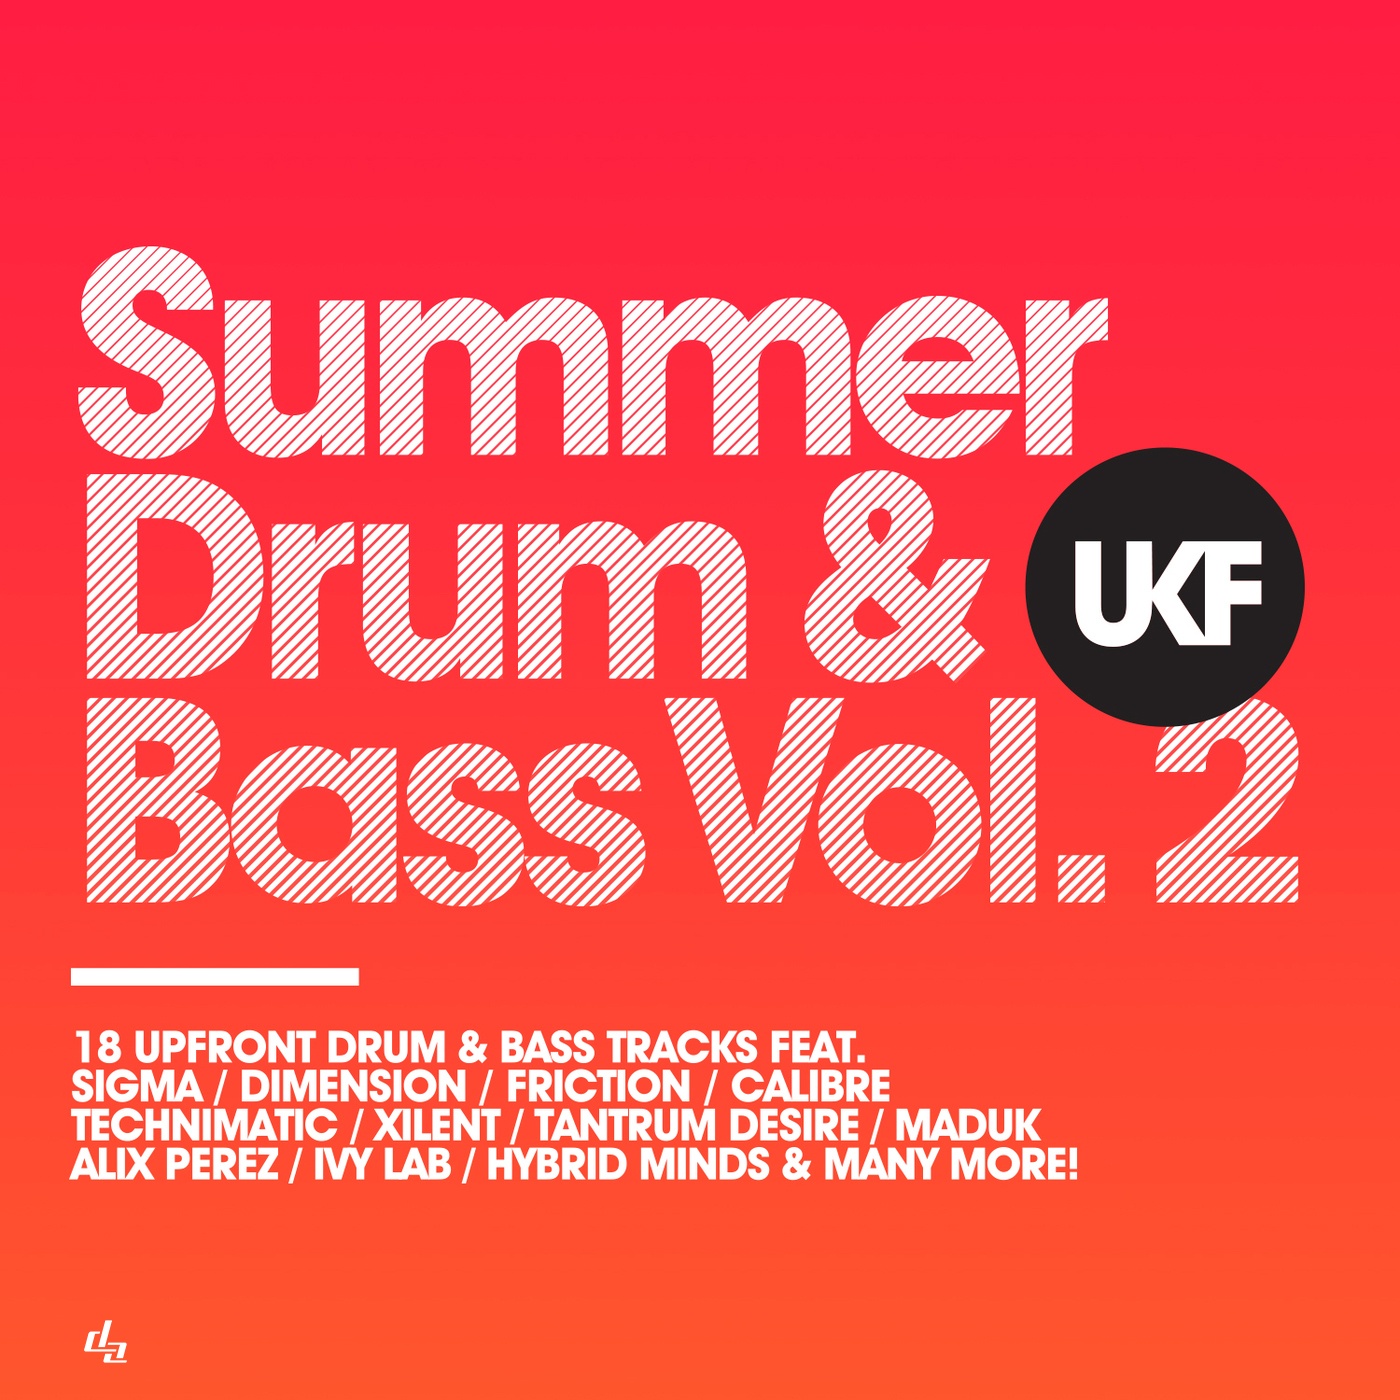 UKF Summer Drum & Bass Vol. 2